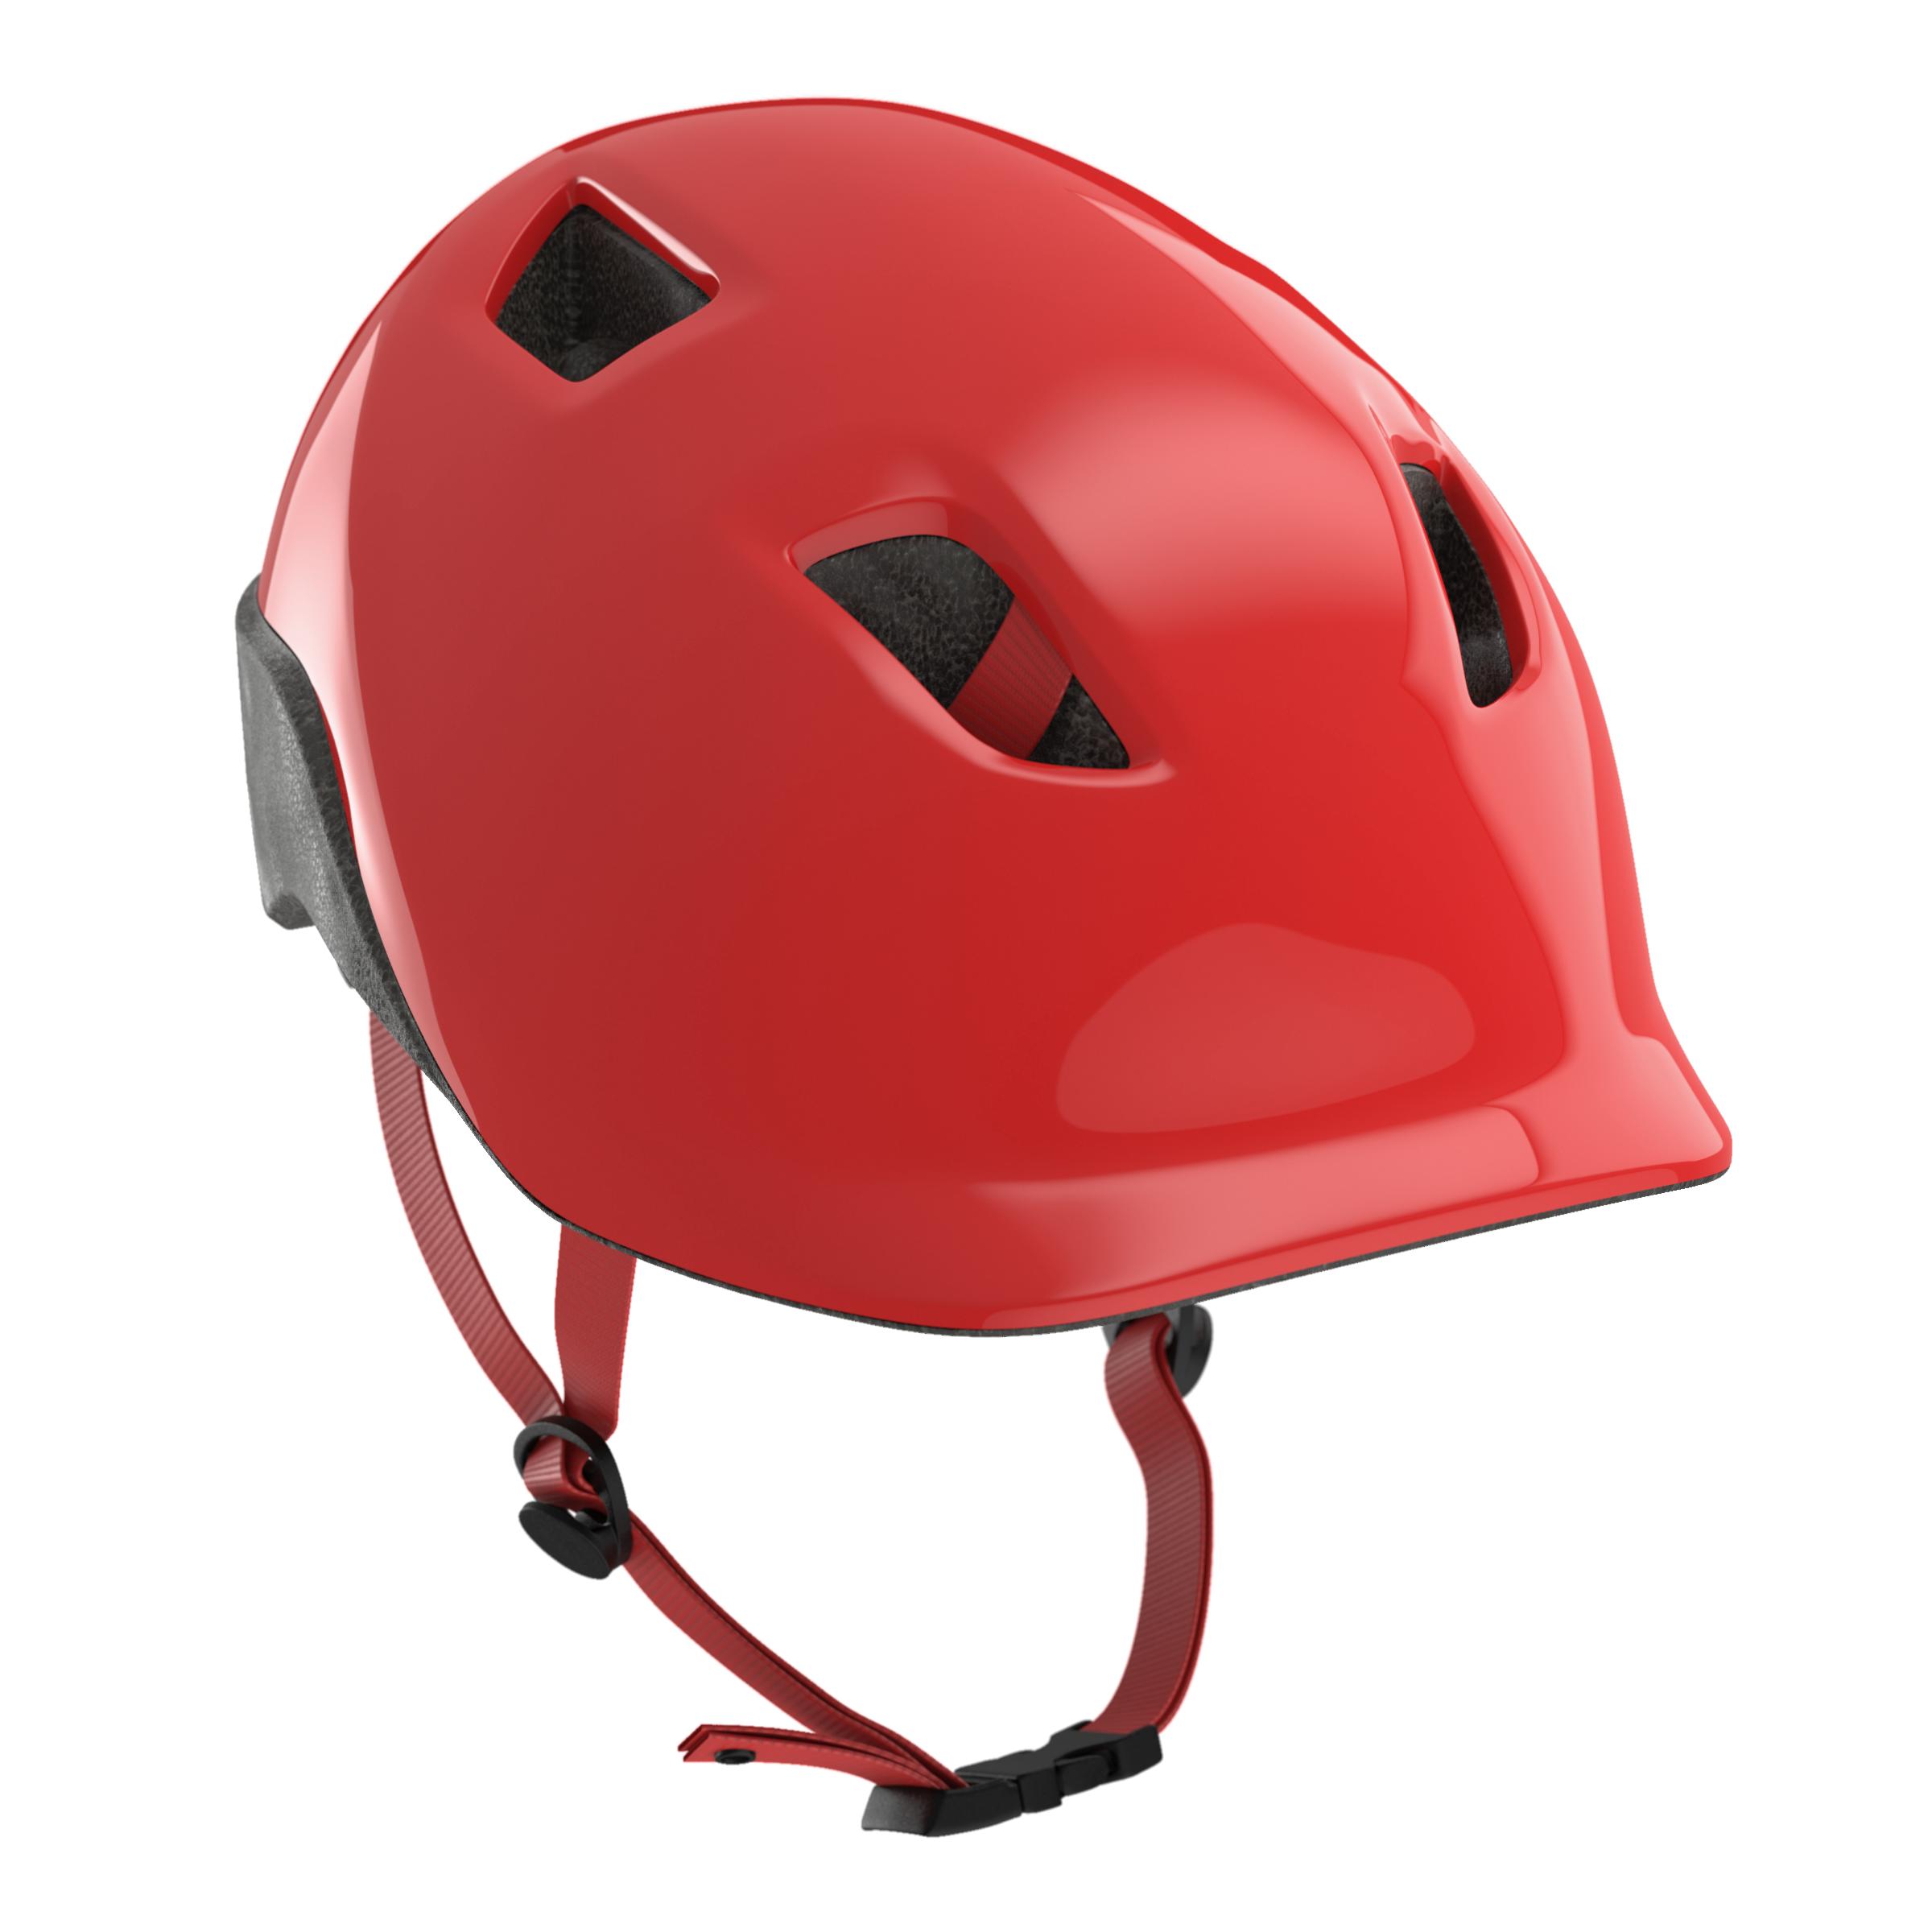 red kids helmet